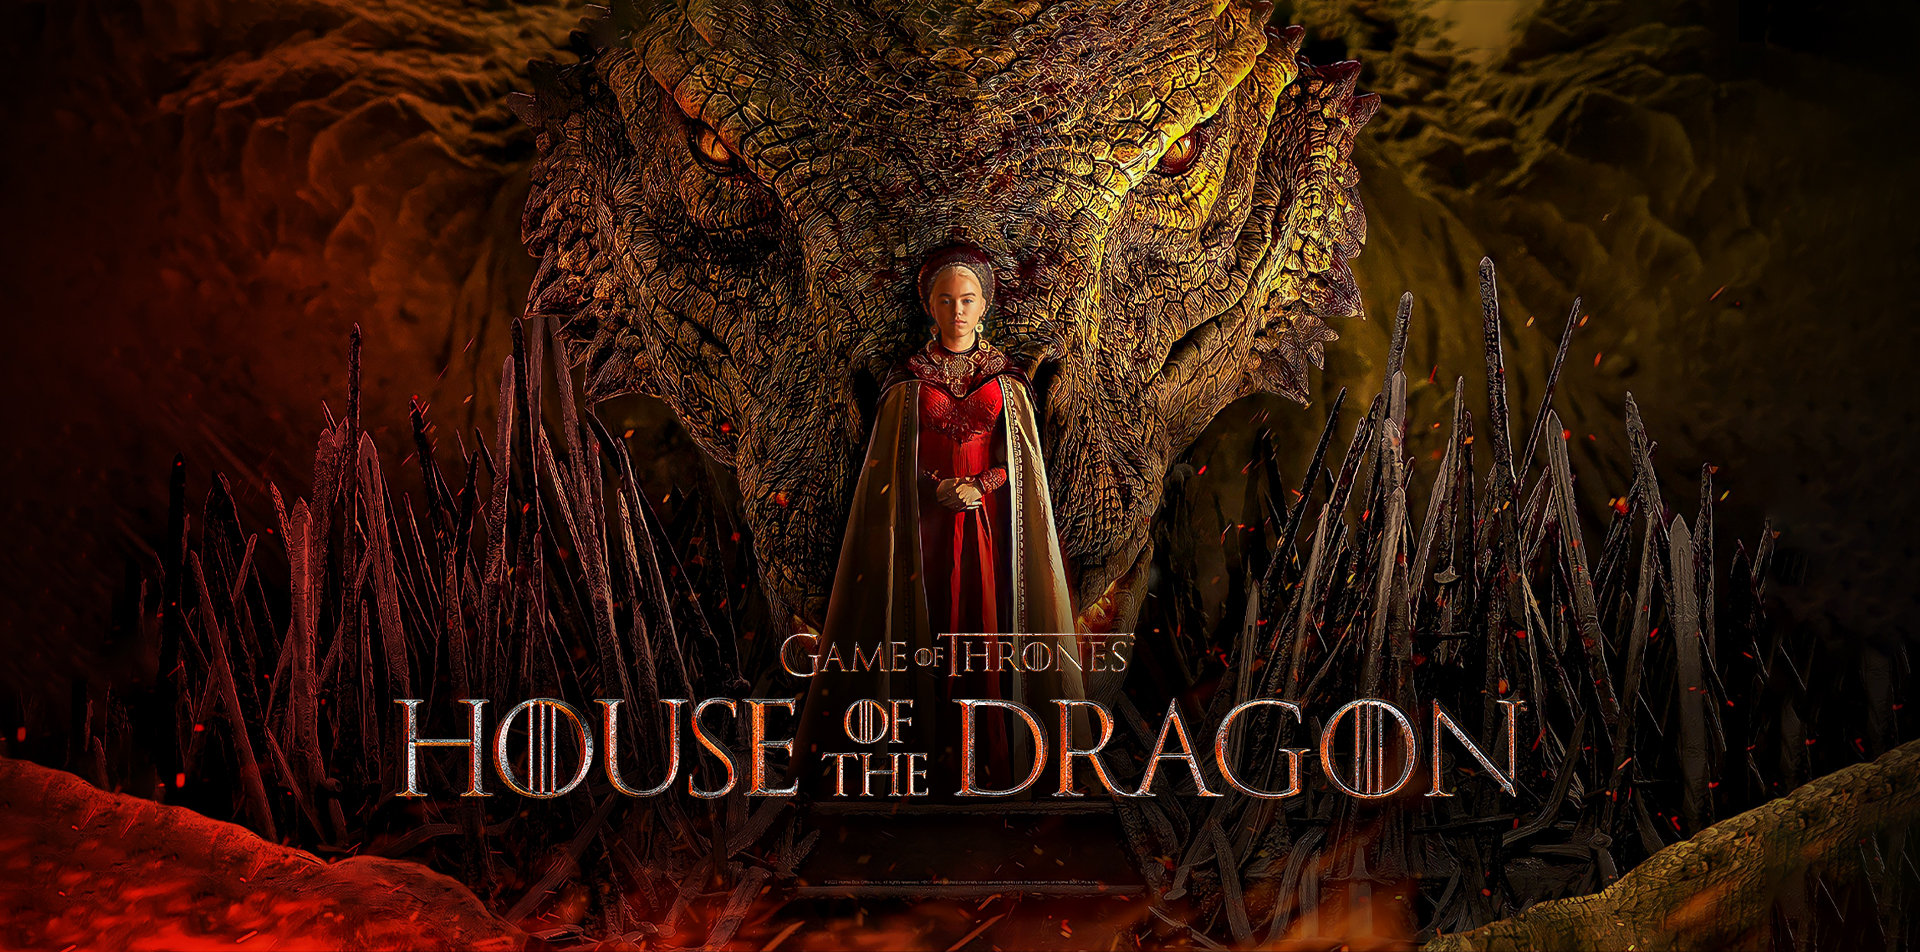 Duolingo e HBO Max fazem parceria para estreia de House of the Dragon